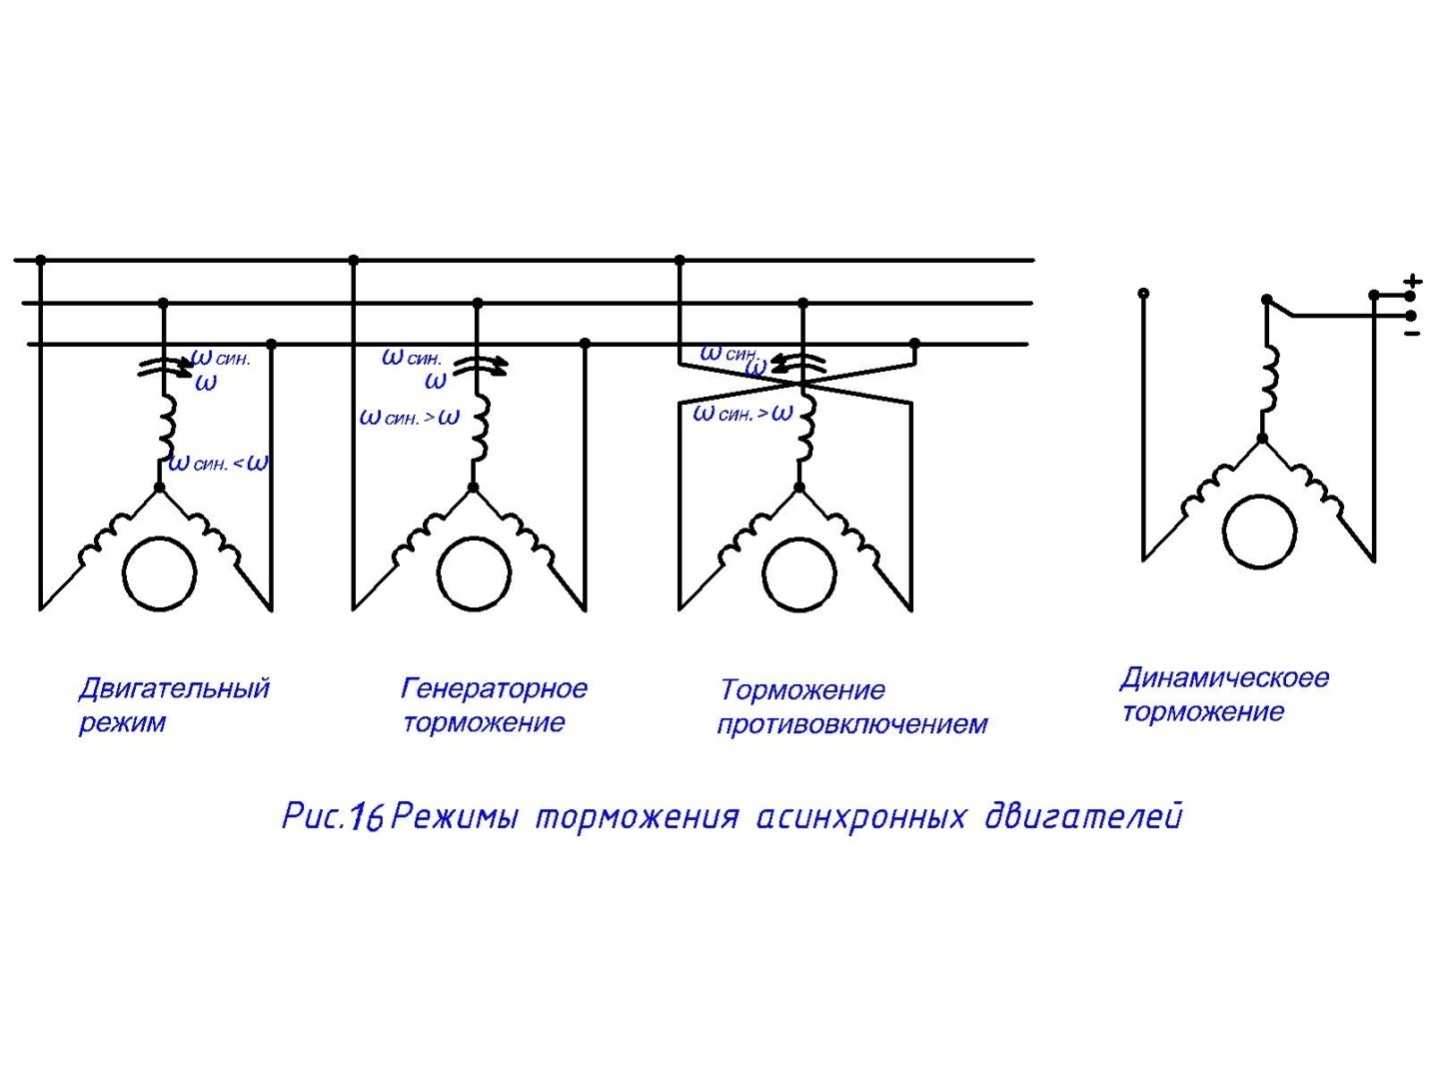 Конденсаторное торможение асинхронных электродвигателей / публикации / energoboard.ru